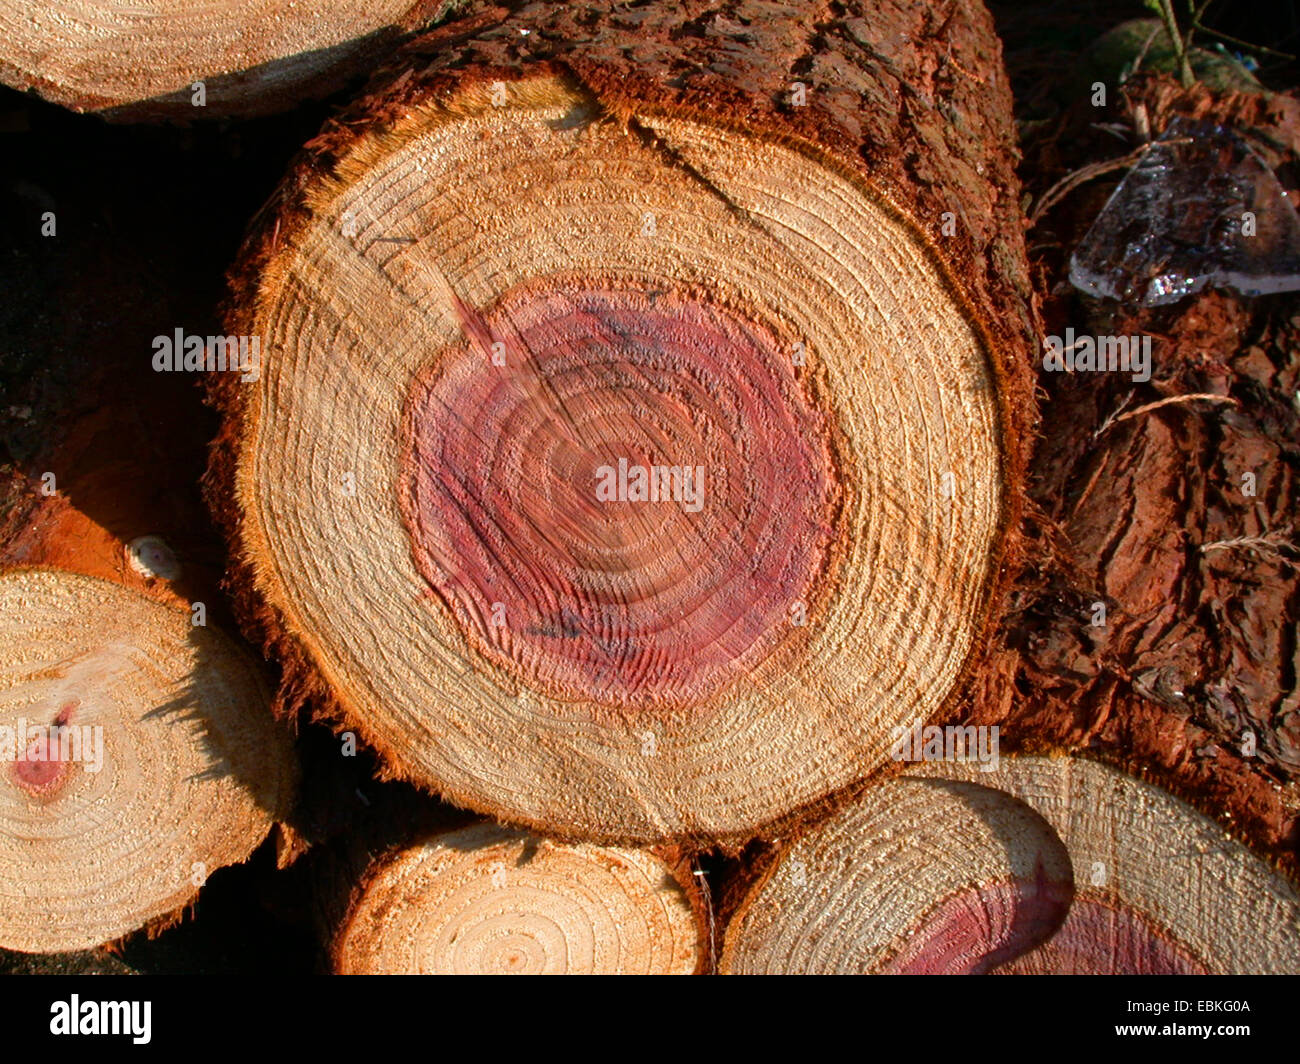 giant sequoia, giant redwood (Sequoiadendron giganteum), timber Stock Photo